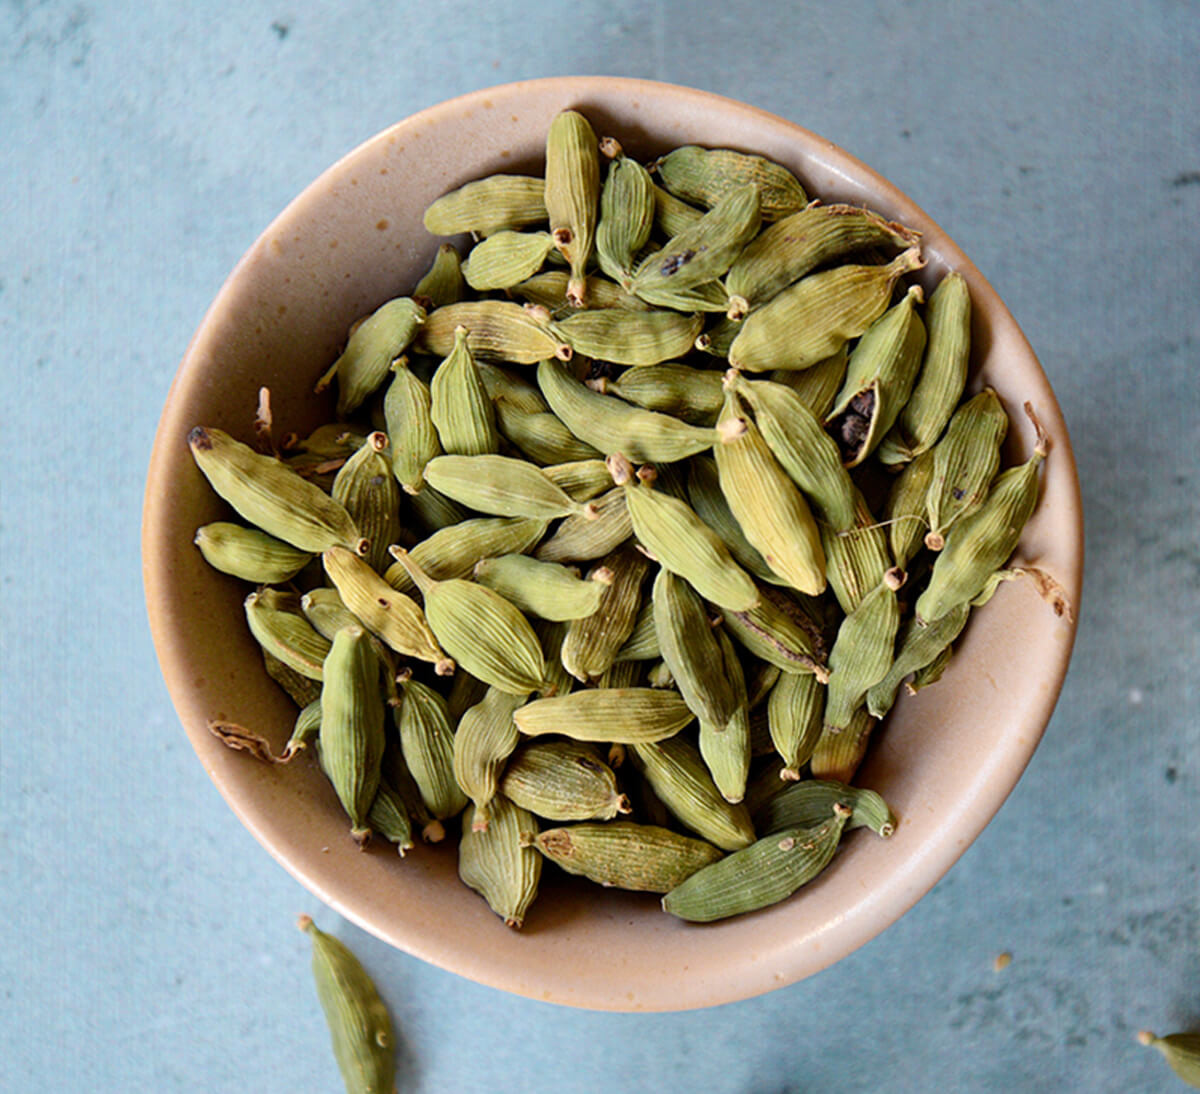 La cardamome, une épice venue d'Asie qui parfume intensément recettes  salées et sucrées